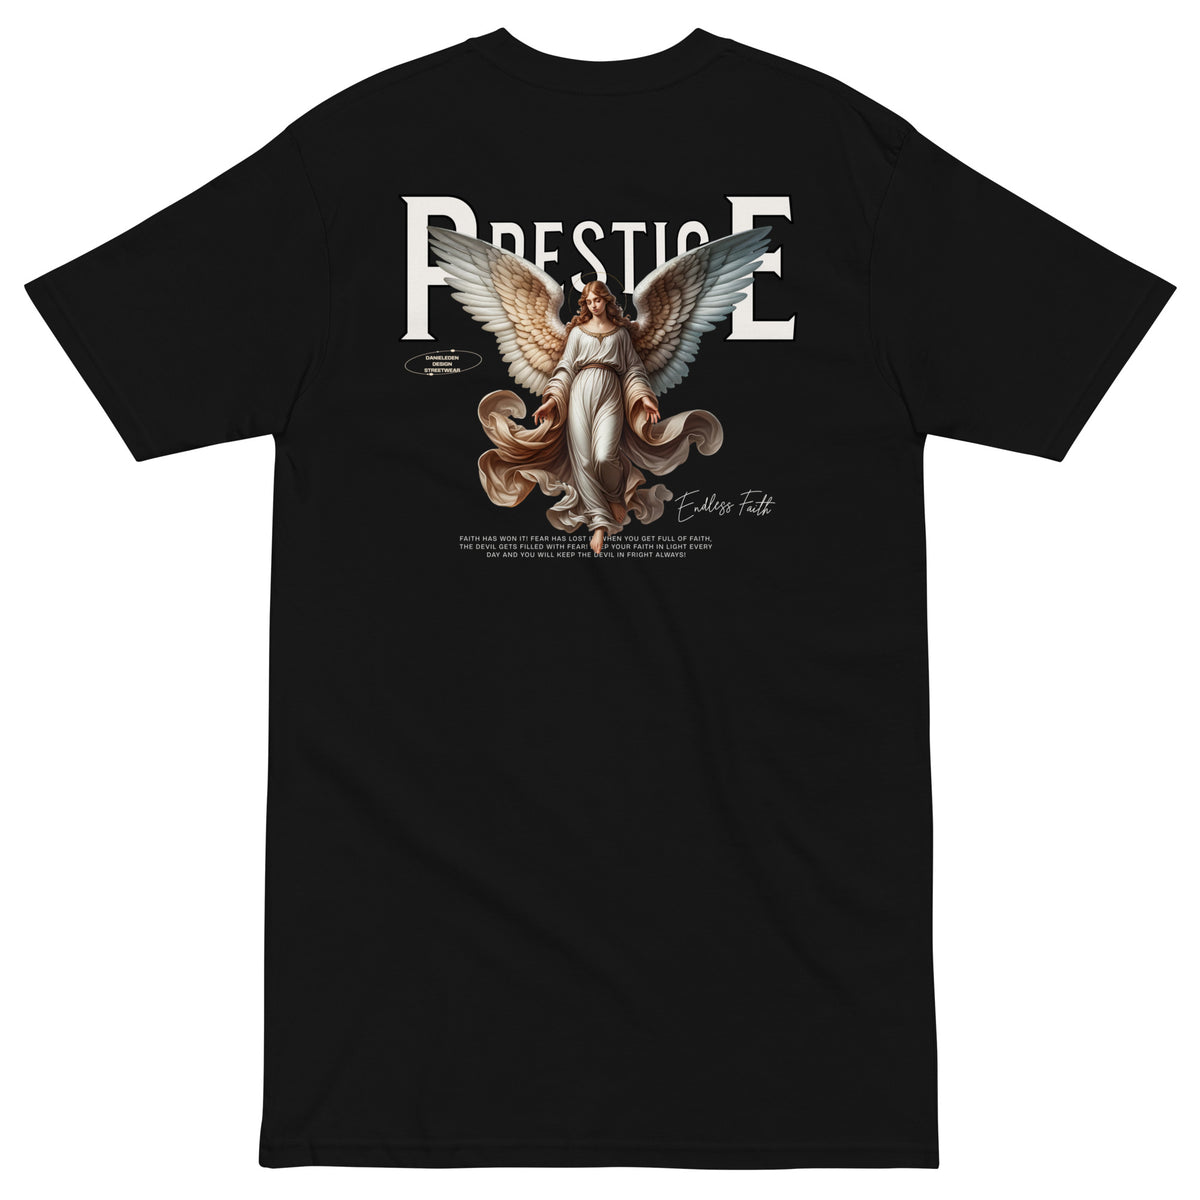 DanielEden premium t shirt " Prestige "